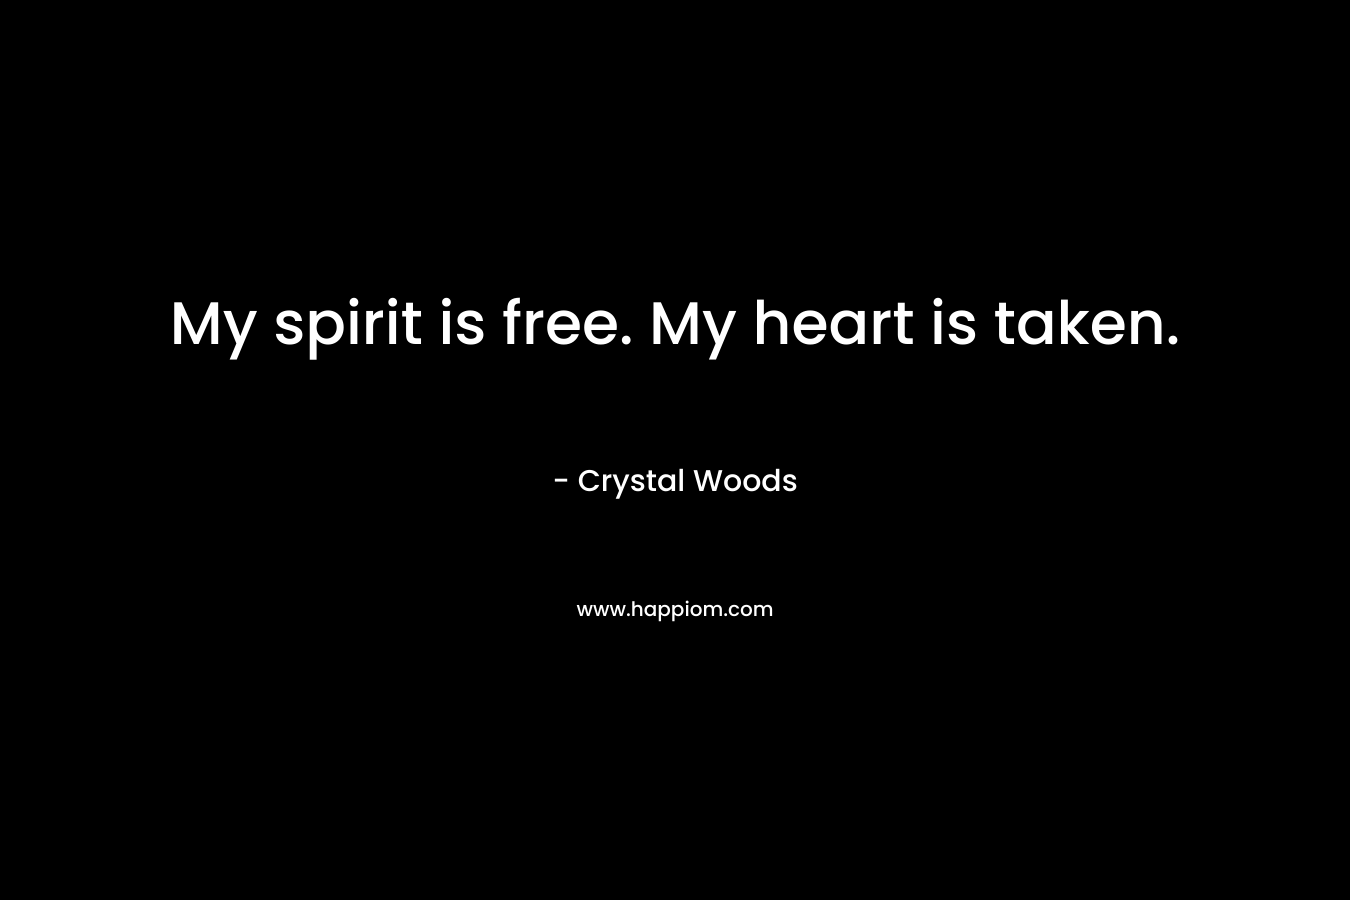 My spirit is free. My heart is taken.